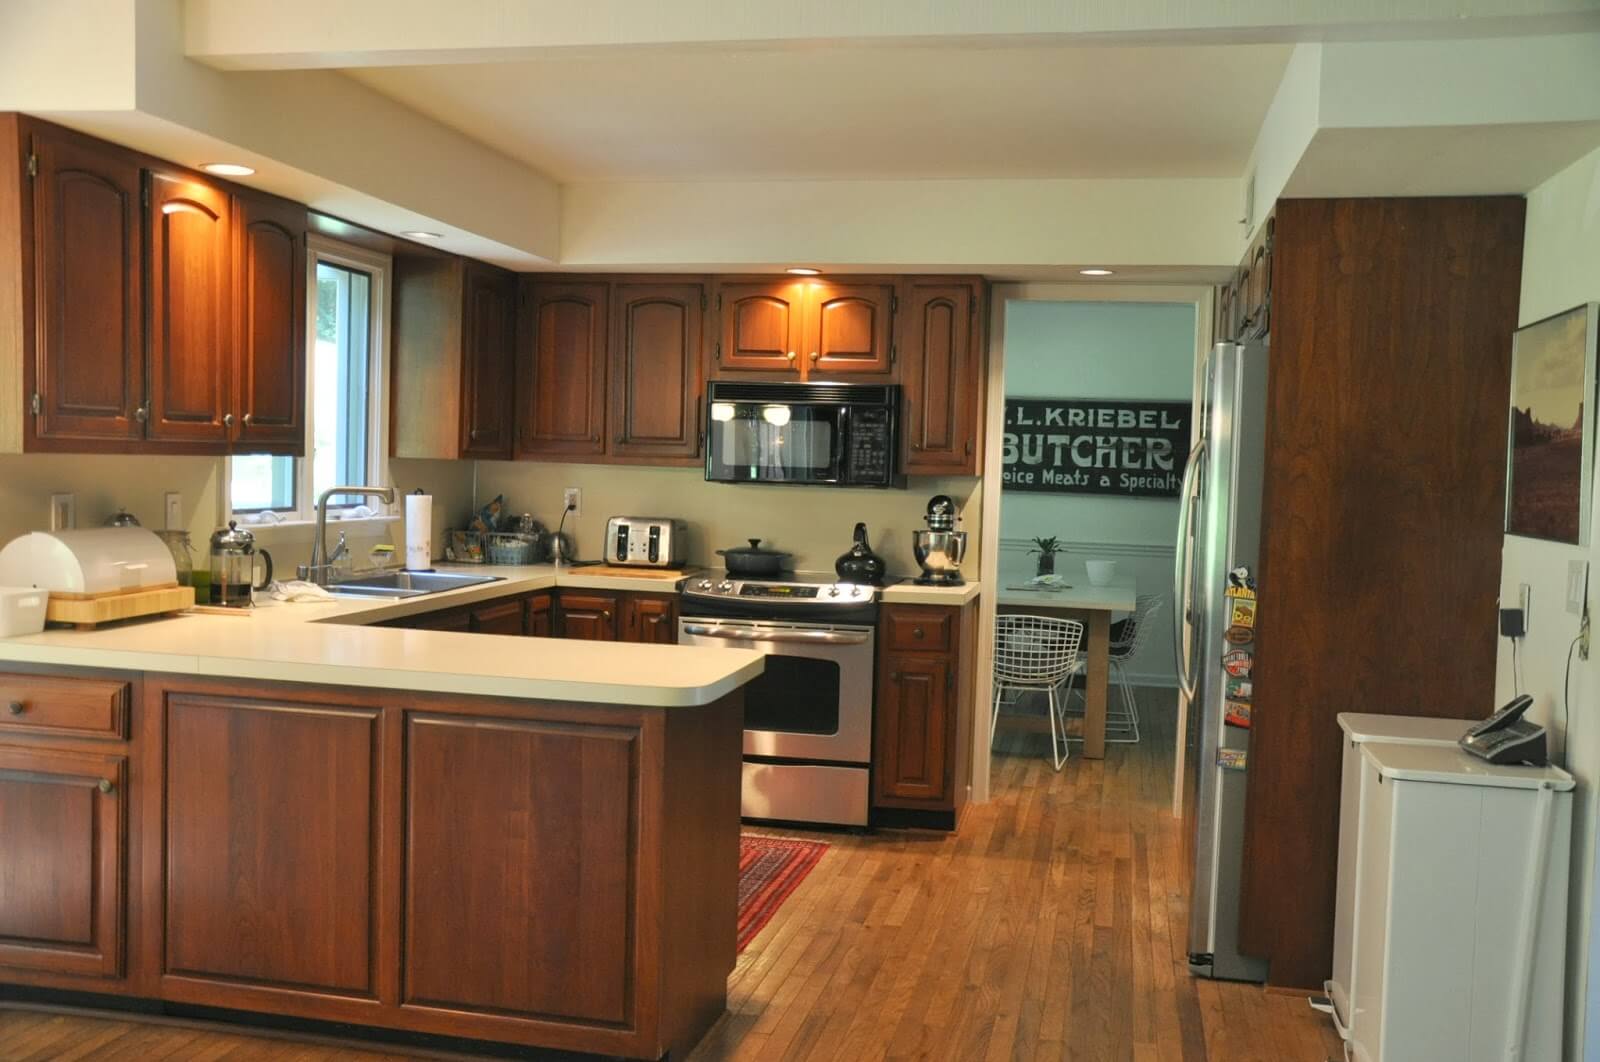 u-shaped-kitchen-layout-maximizing-space-and-functionality-b-sidebywale